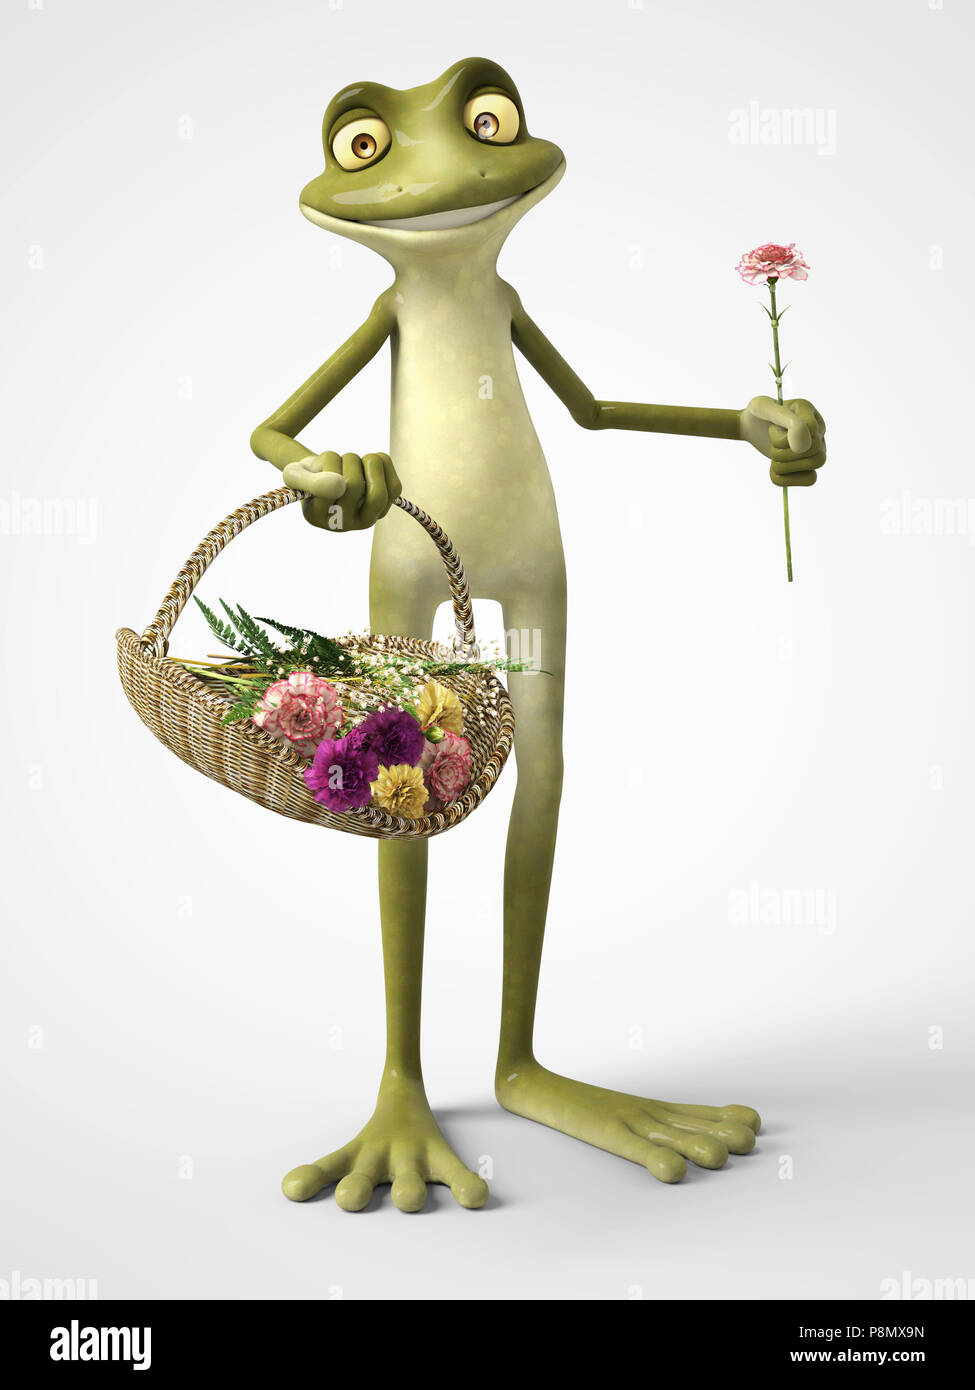 Le rendu 3D d'un dessin animé, souriant tenant une grenouille pour sportifs dans une main et un panier de fleurs d'oeillet dans l'autre. Arrière-plan blanc. Banque D'Images